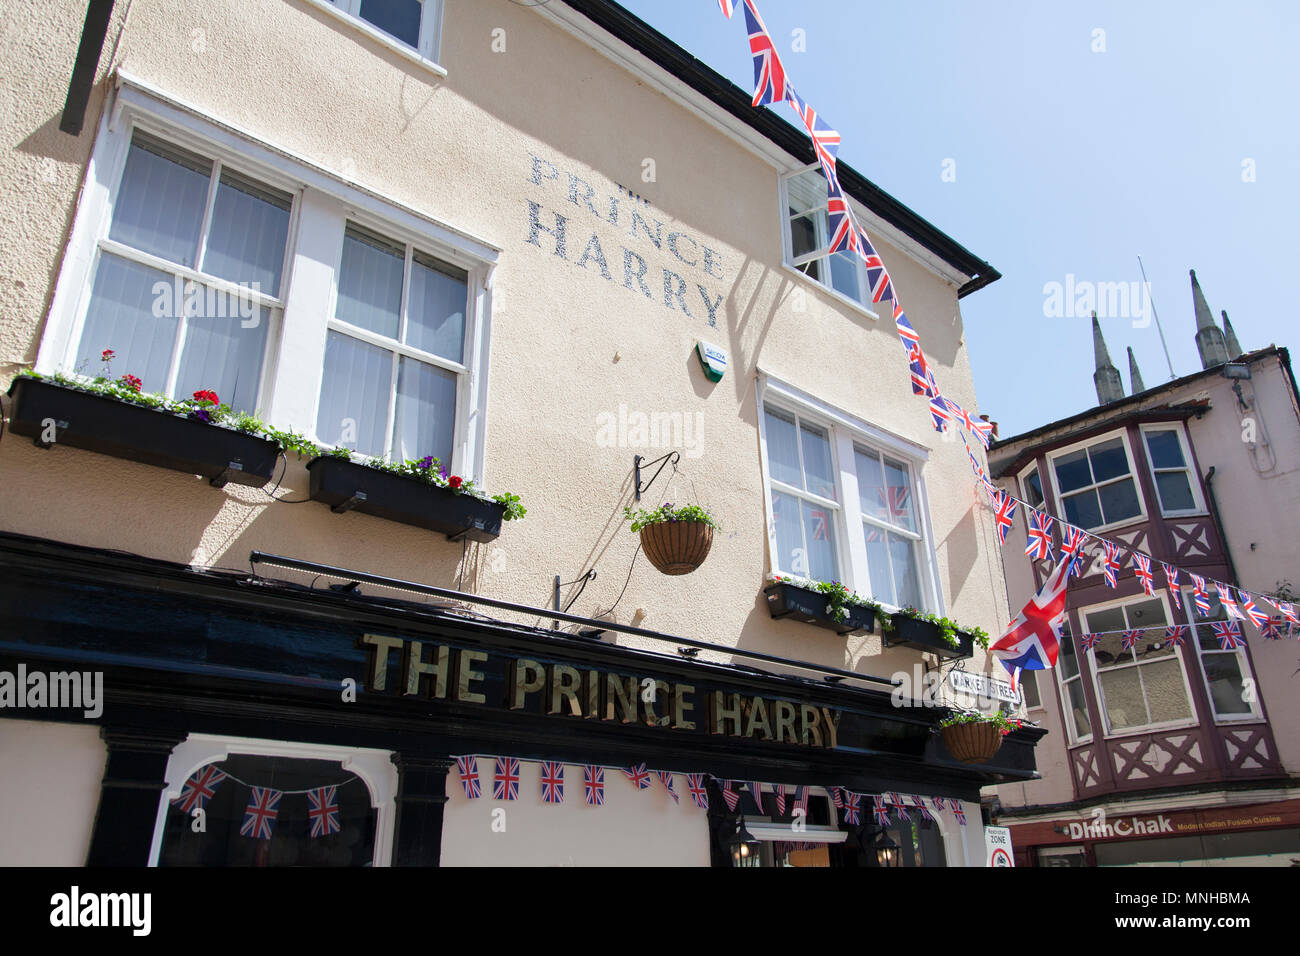 Windsor, Royaume-Uni. 17 mai, 2018. Le prince Harry en public house Windor décorée de drapeaux Union Jack dans la préparation de l'encre Crédit : Mariage Royal Drop/Alamy Live News Banque D'Images